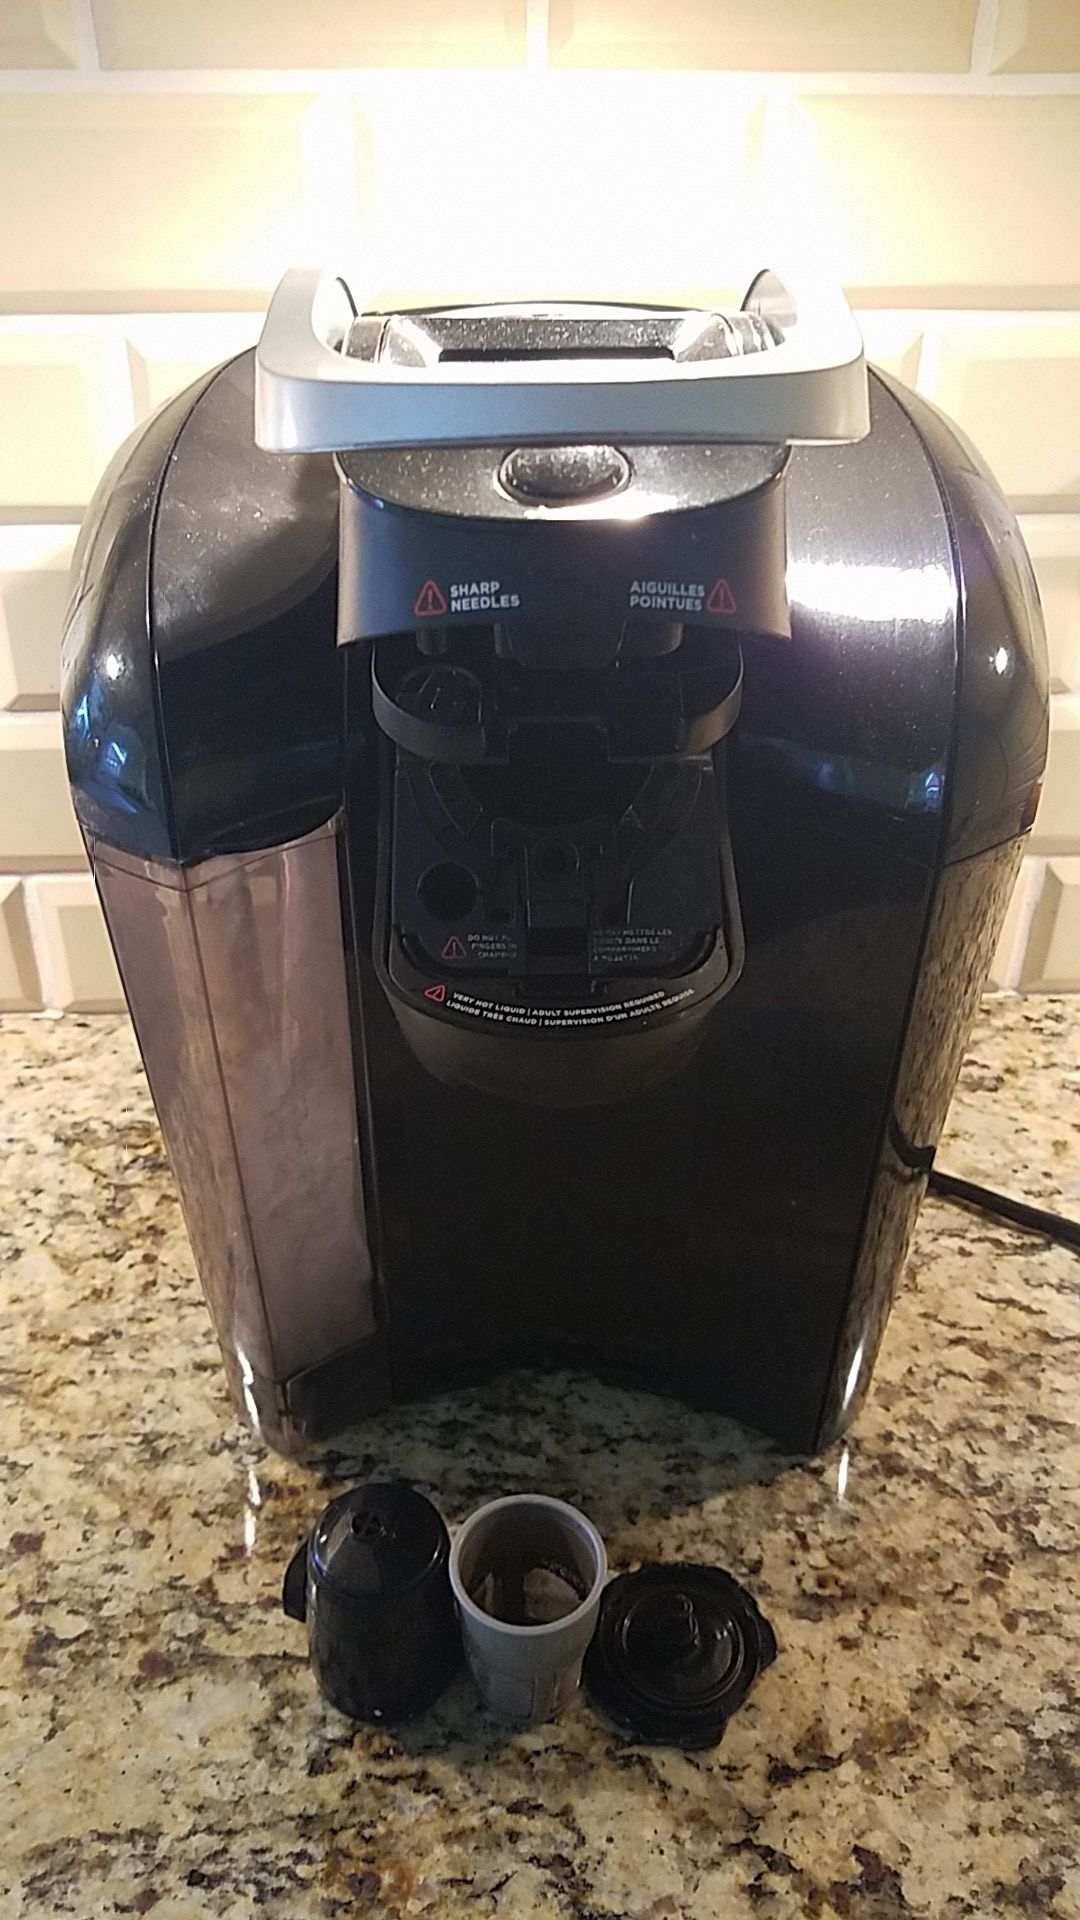 Keurig 2.0 coffeemaker